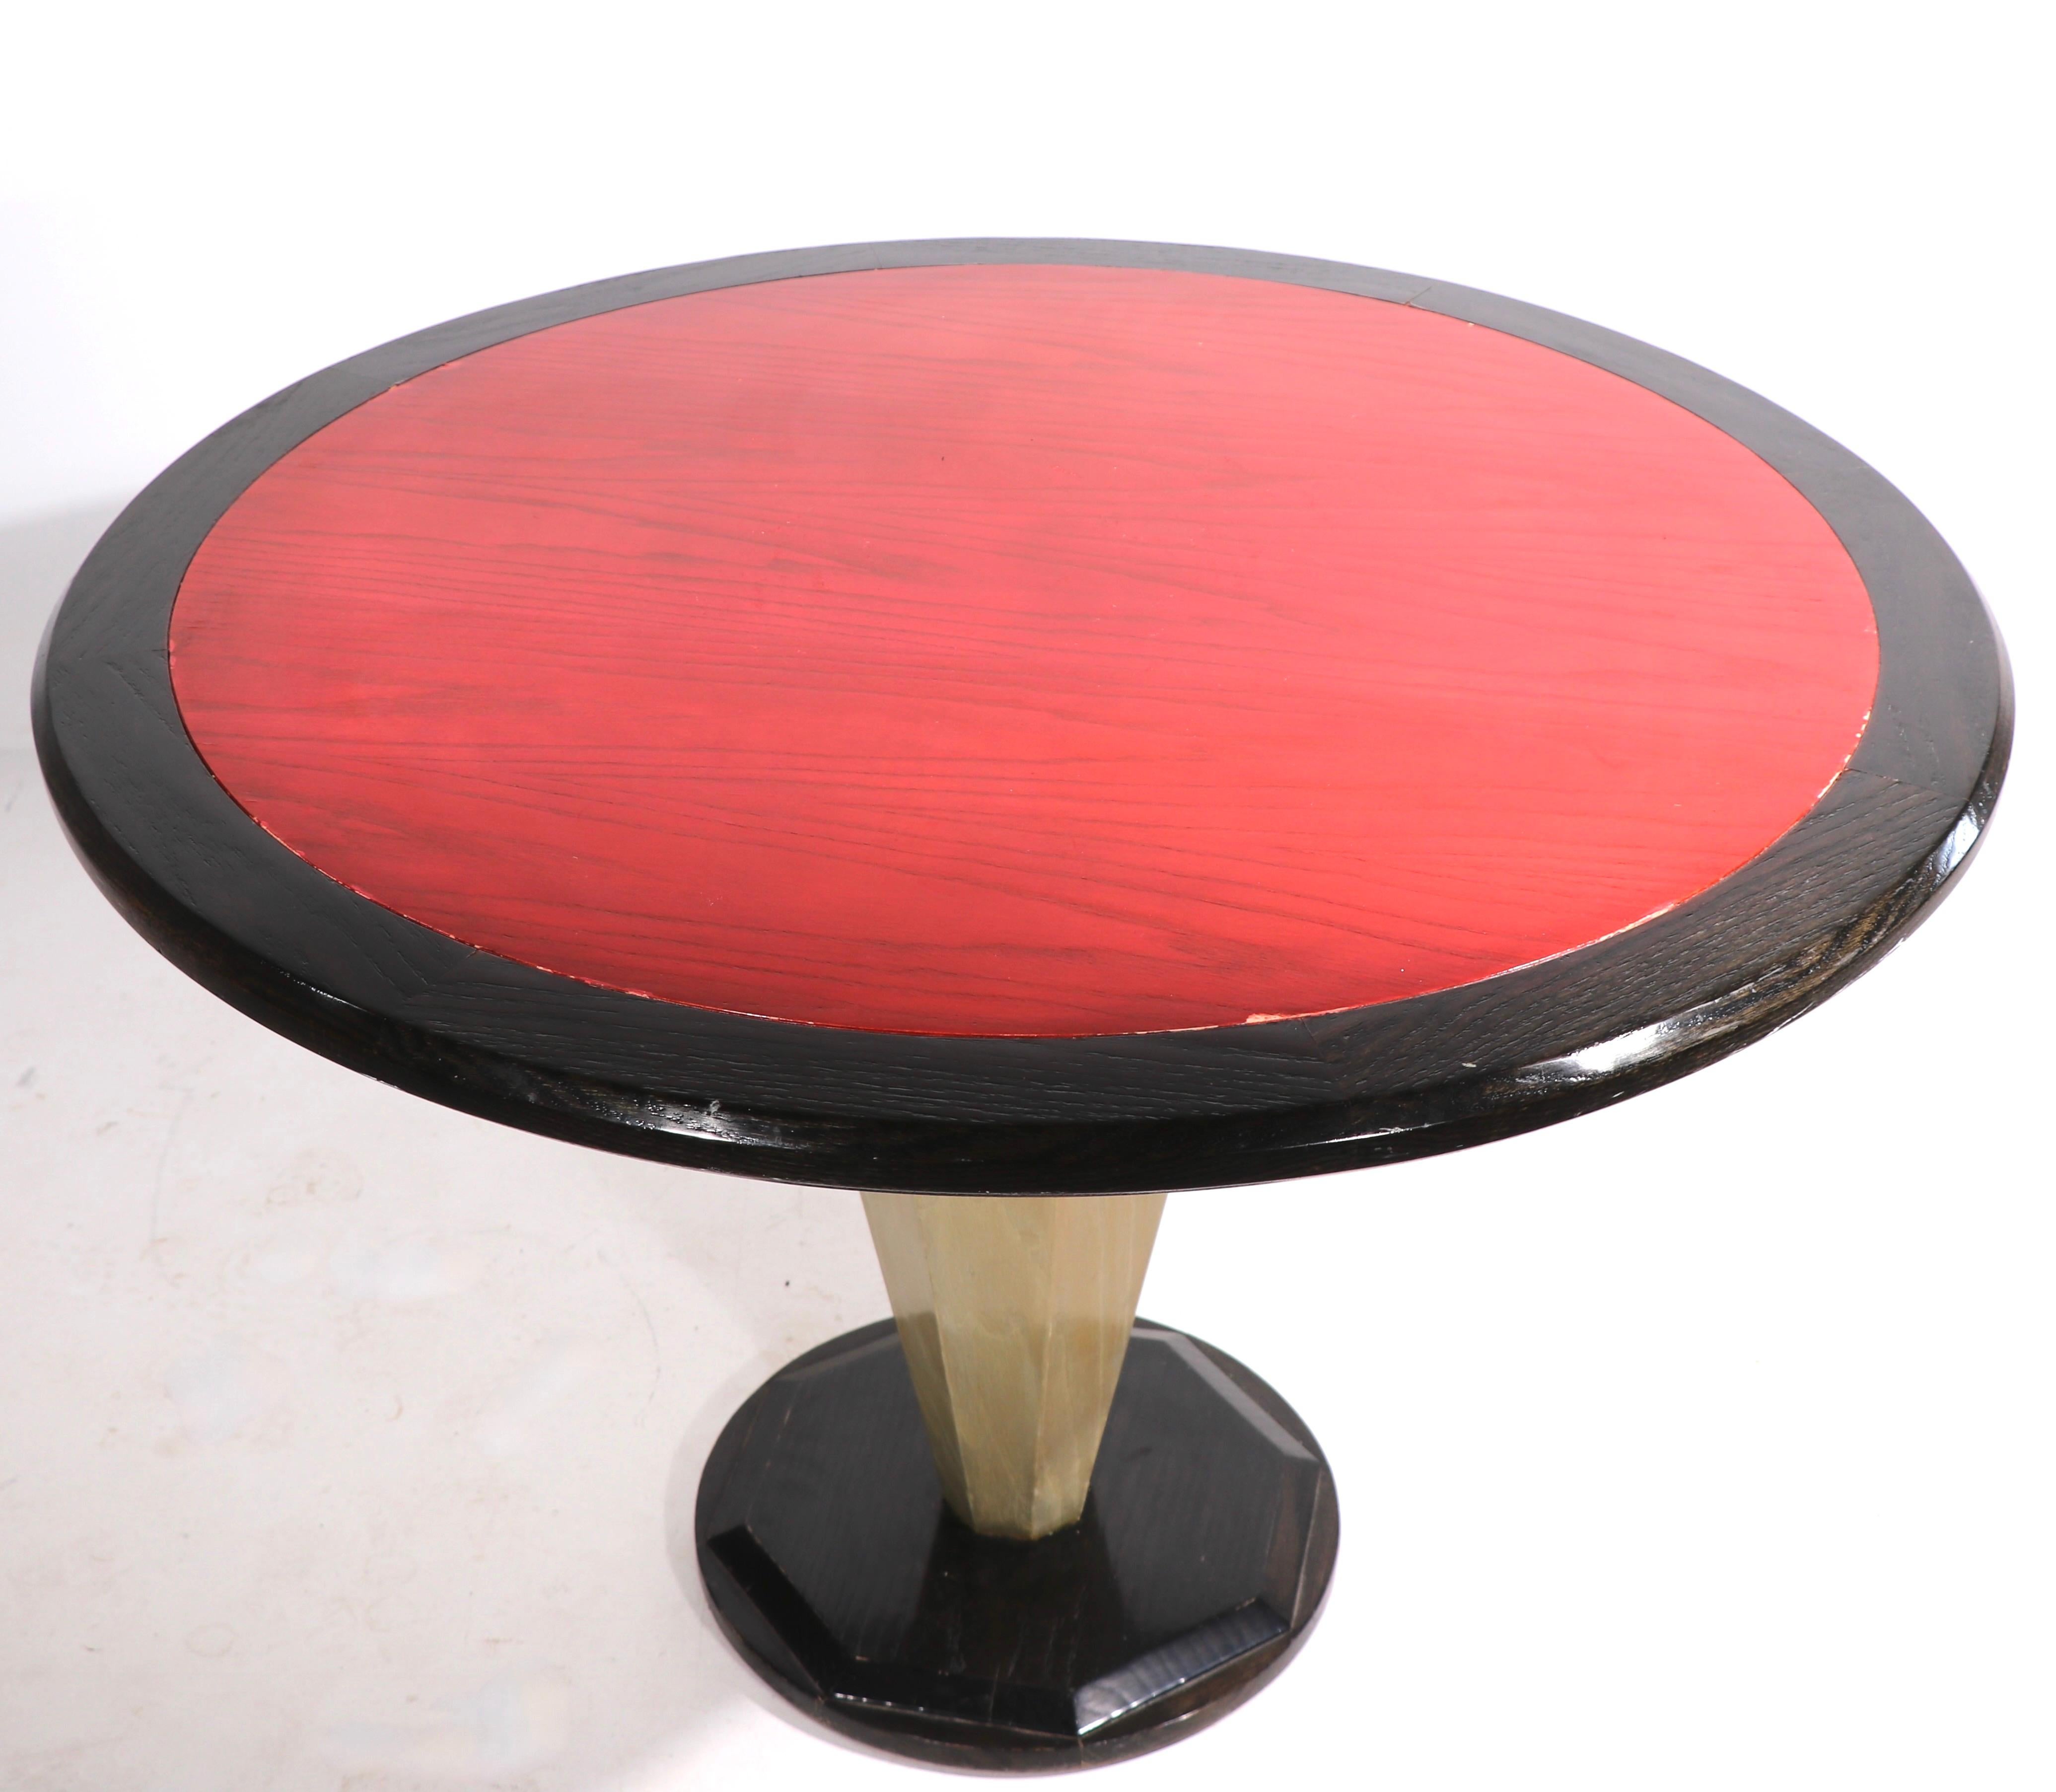 Table de salle à manger ronde chic, ou table centrale, avec un piédestal central octogonal effilé, qui supporte le plateau circulaire. La partie supérieure a un centre rouge, avec une garniture arrière contrastée, le poteau central est d'une couleur